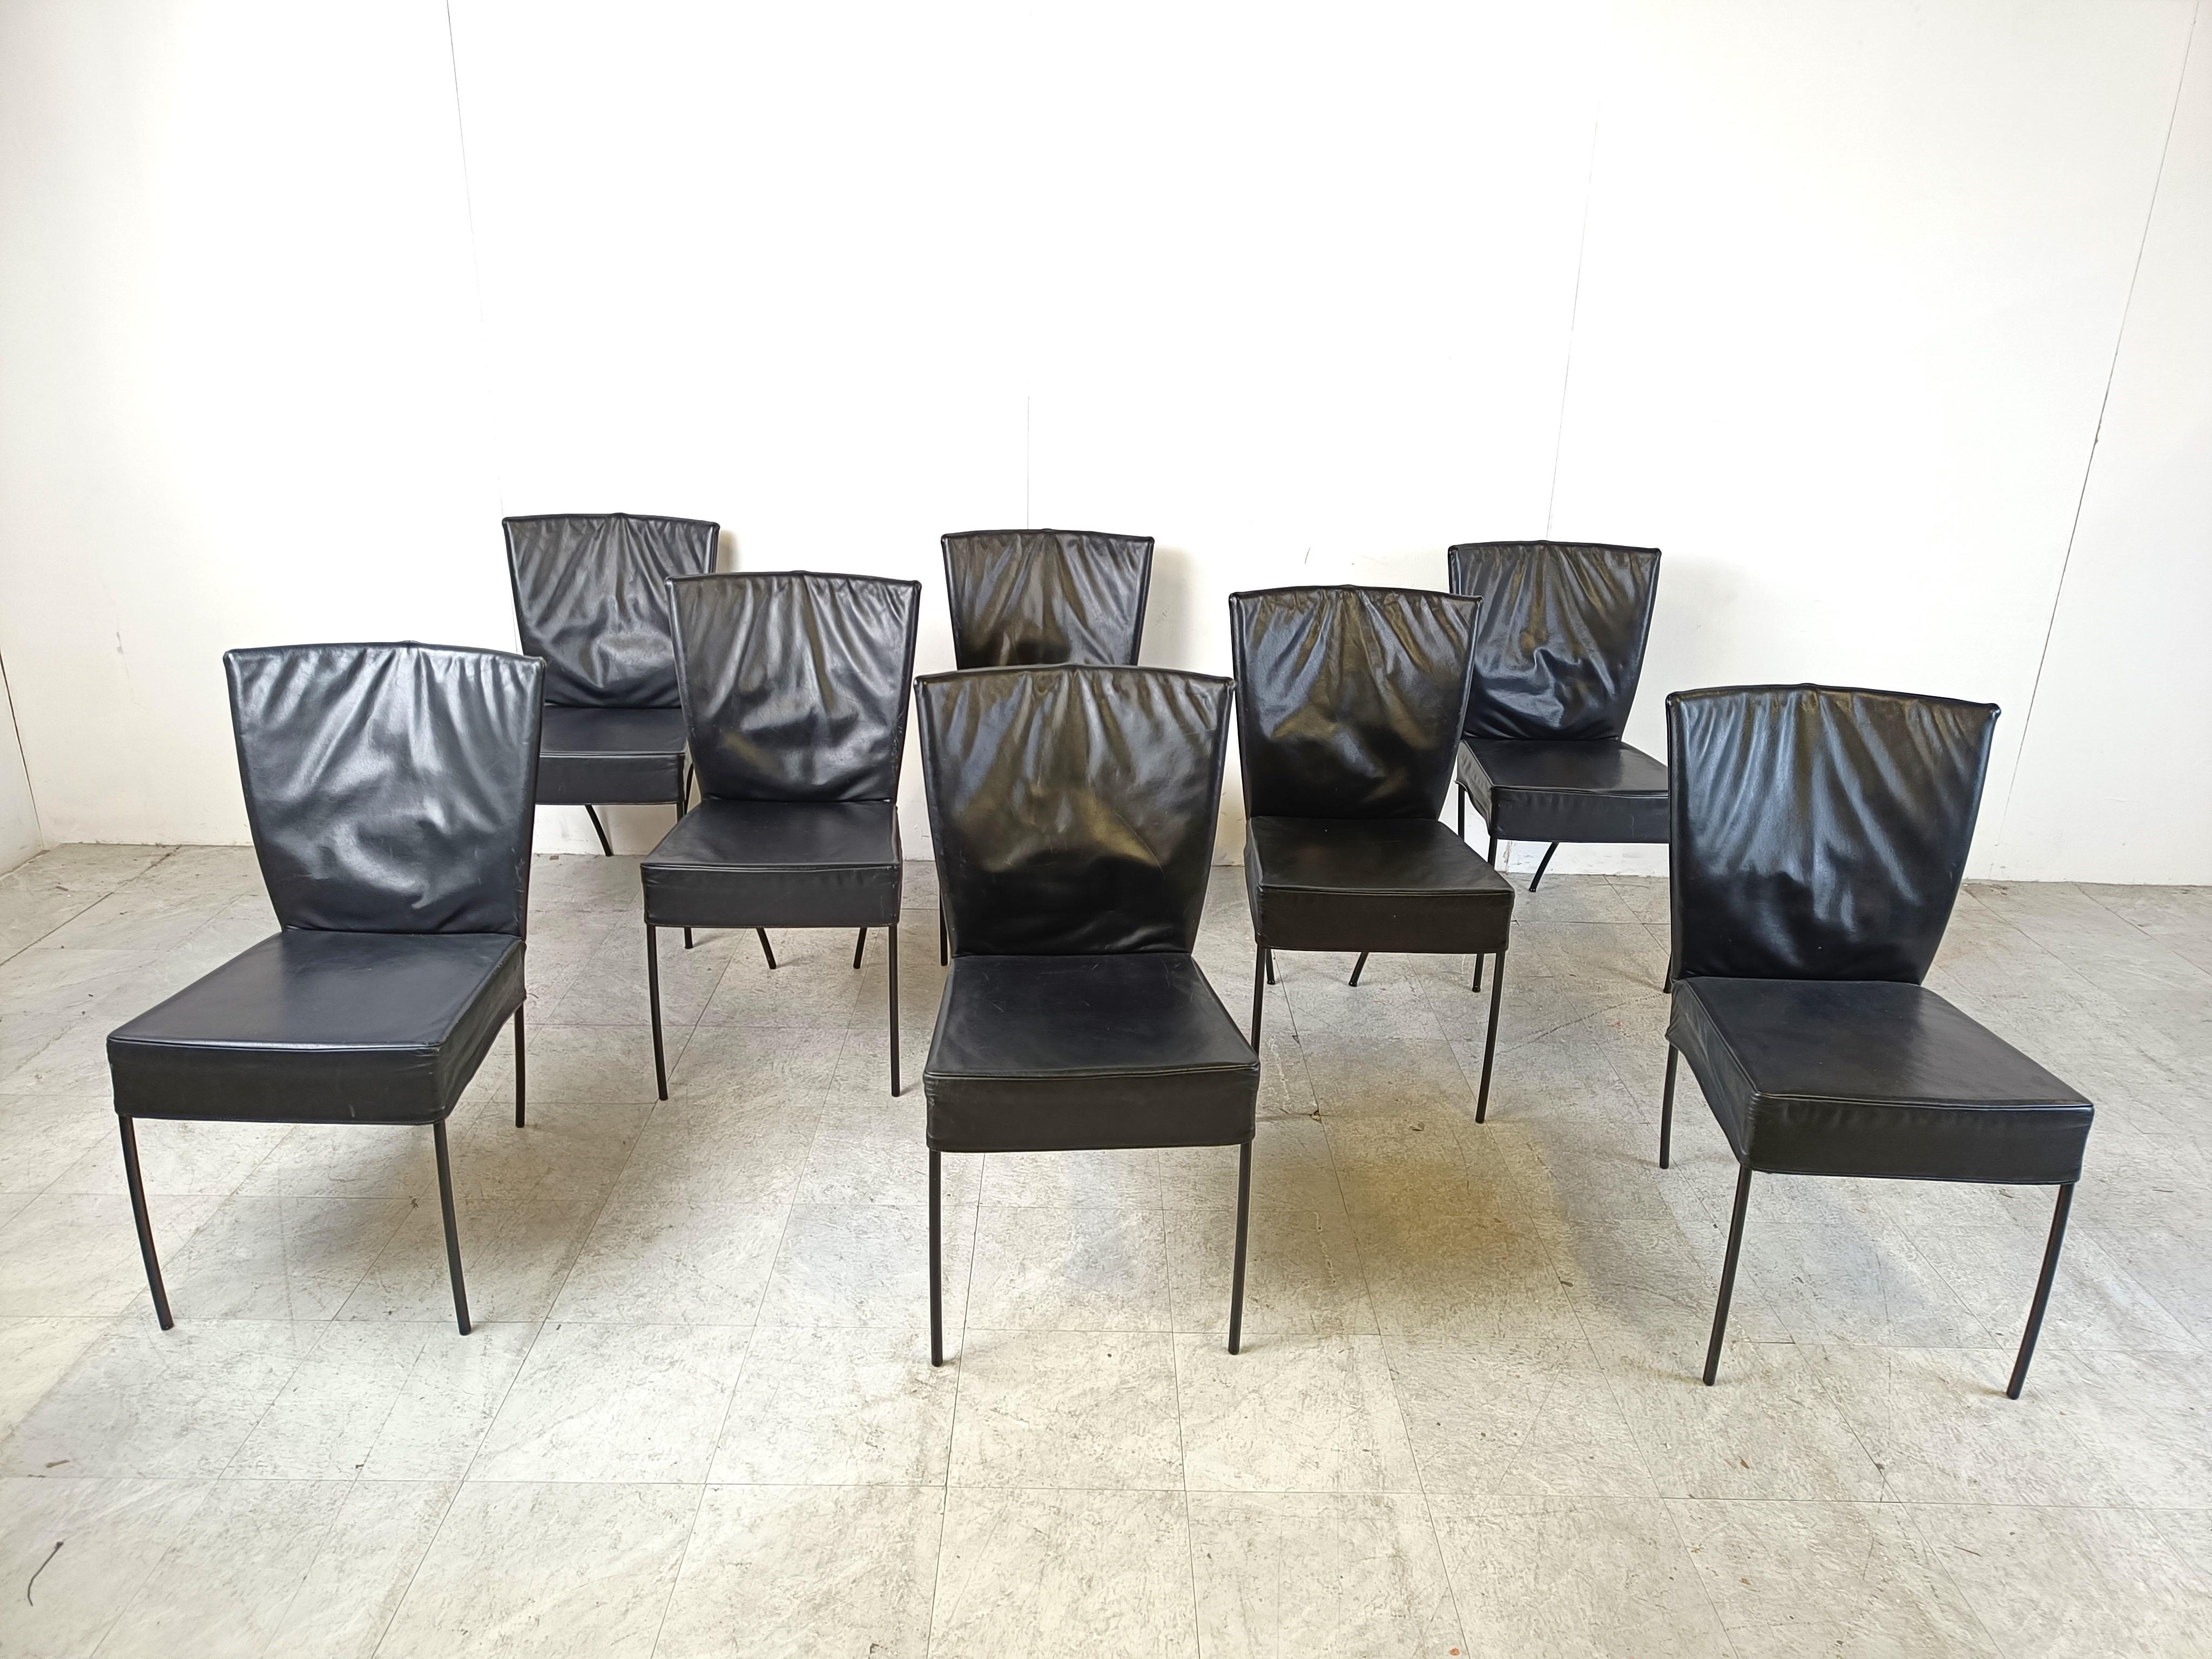 Satz von 8 exquisiten geschwungenen Leder-Esszimmerstühlen in der Art von Gerard Van Den Berg für Montis.

Wunderschönes geschwungenes Design mit dicker Lederpolsterung und schwarzem Metallrahmen.

Zeitloses Design

1980er Jahre -